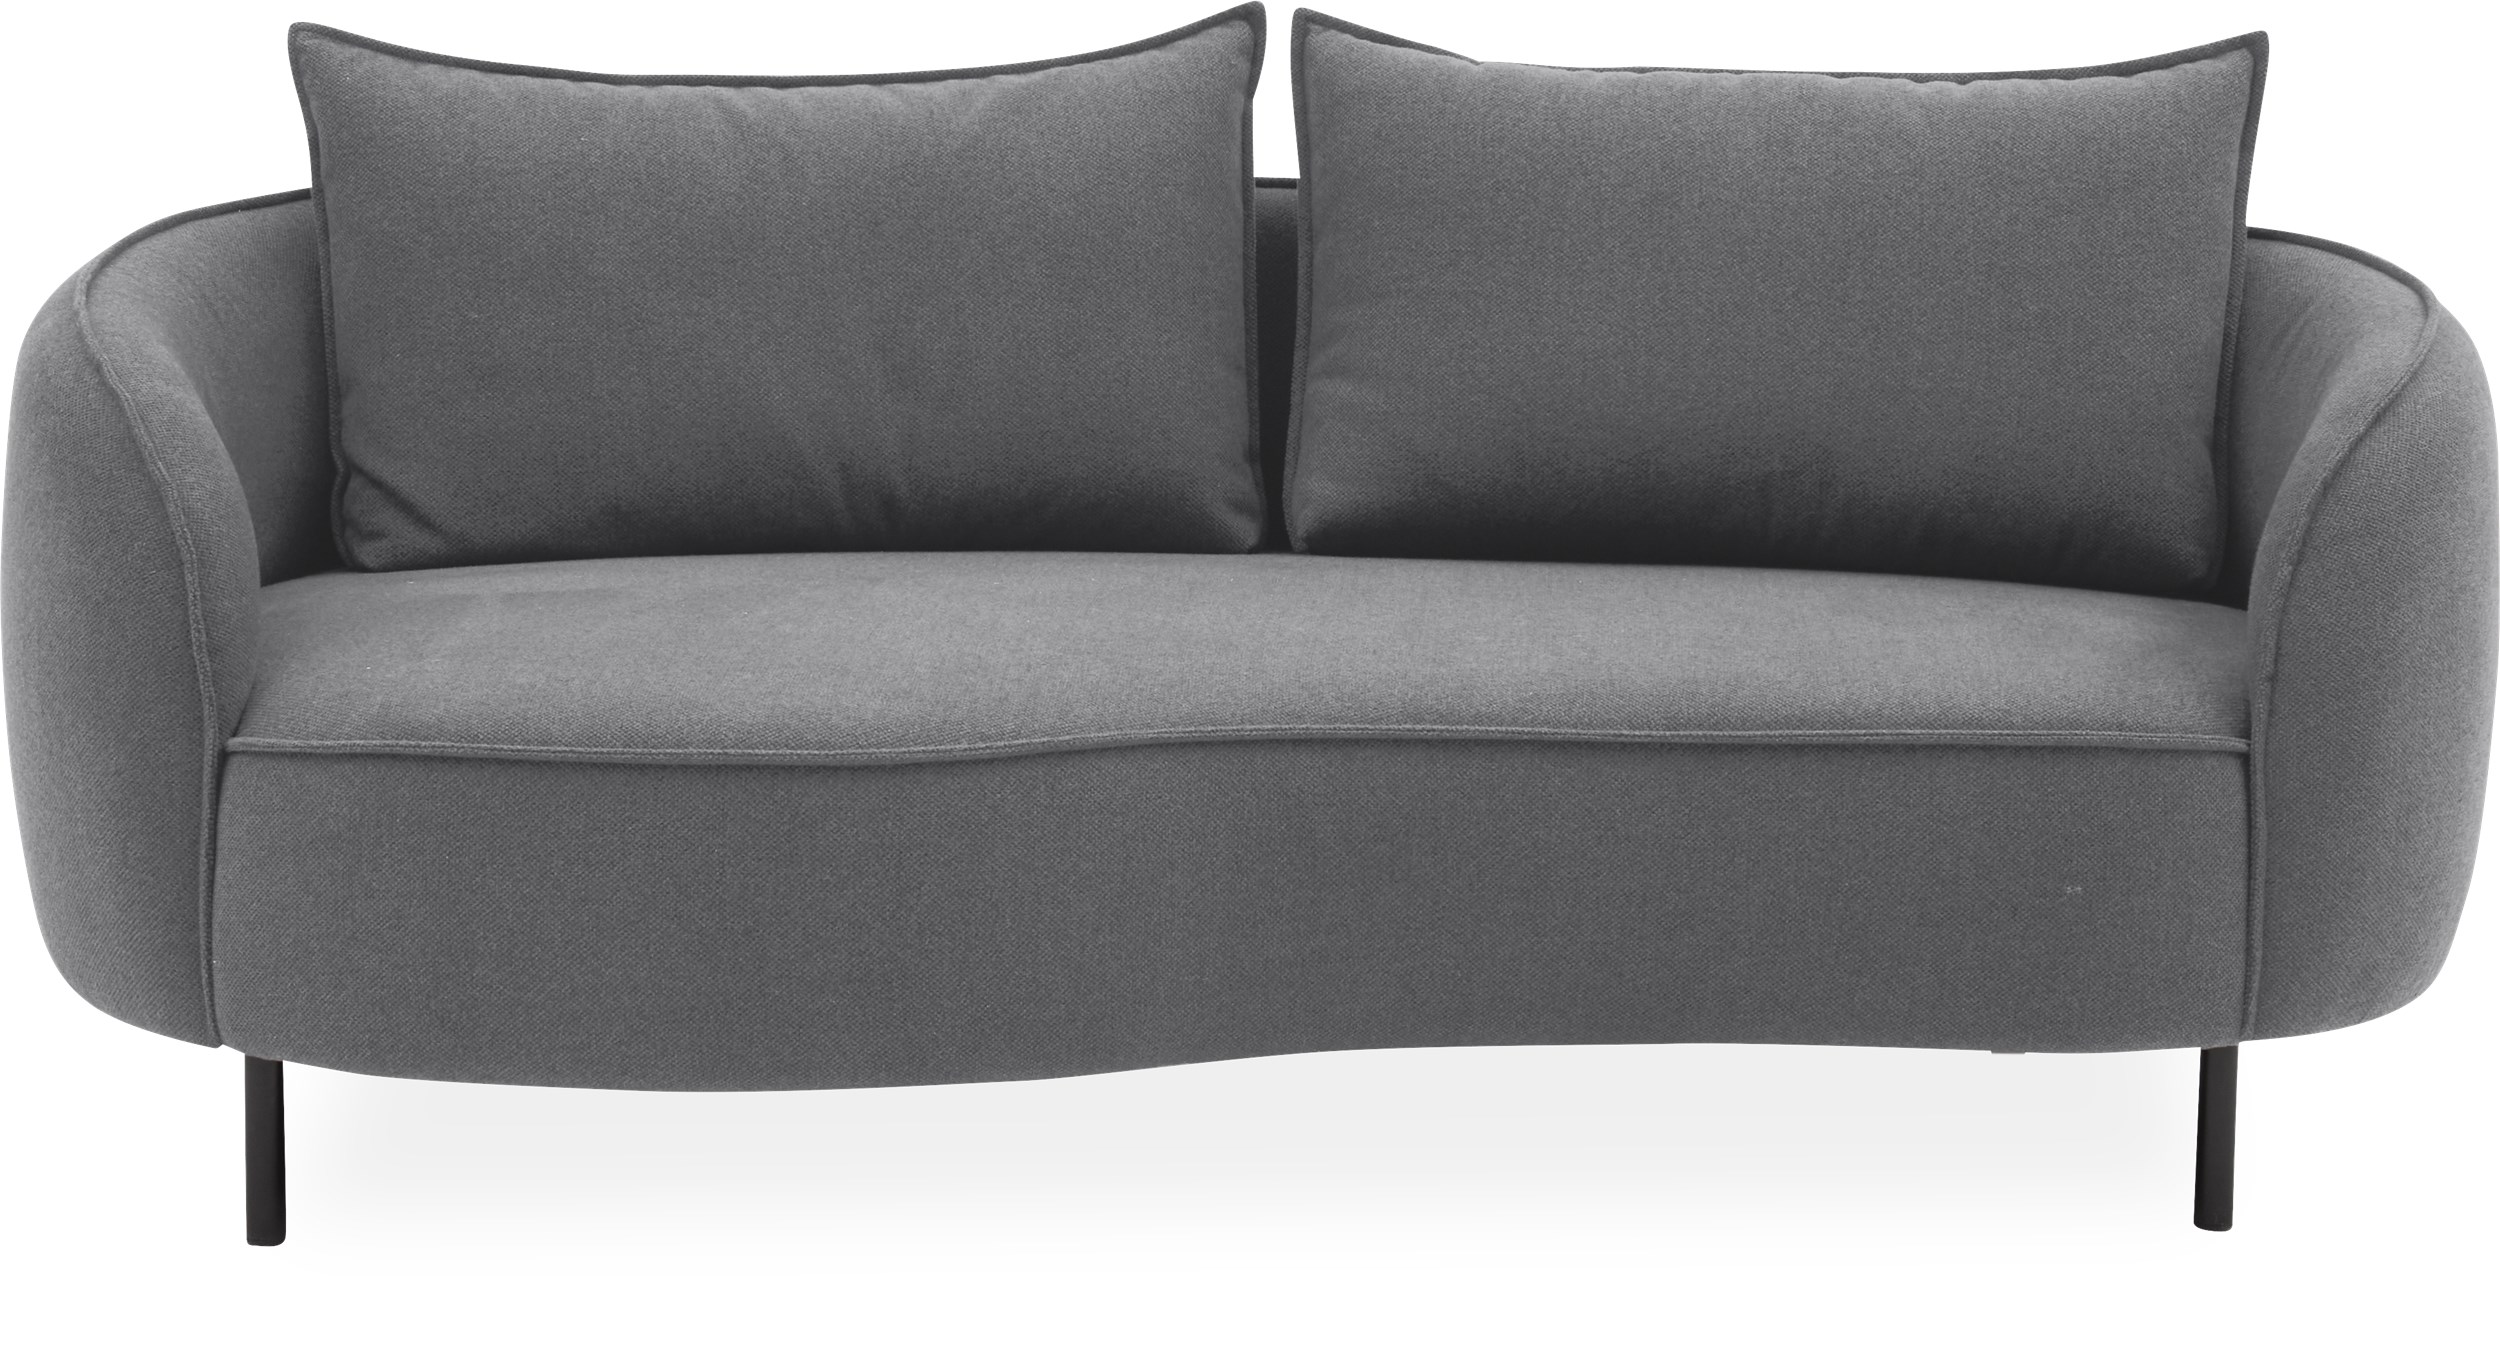 Heim 2½ pers. Sofa - Denno 1261 Deep Grey stof og ben i sortlakeret metal